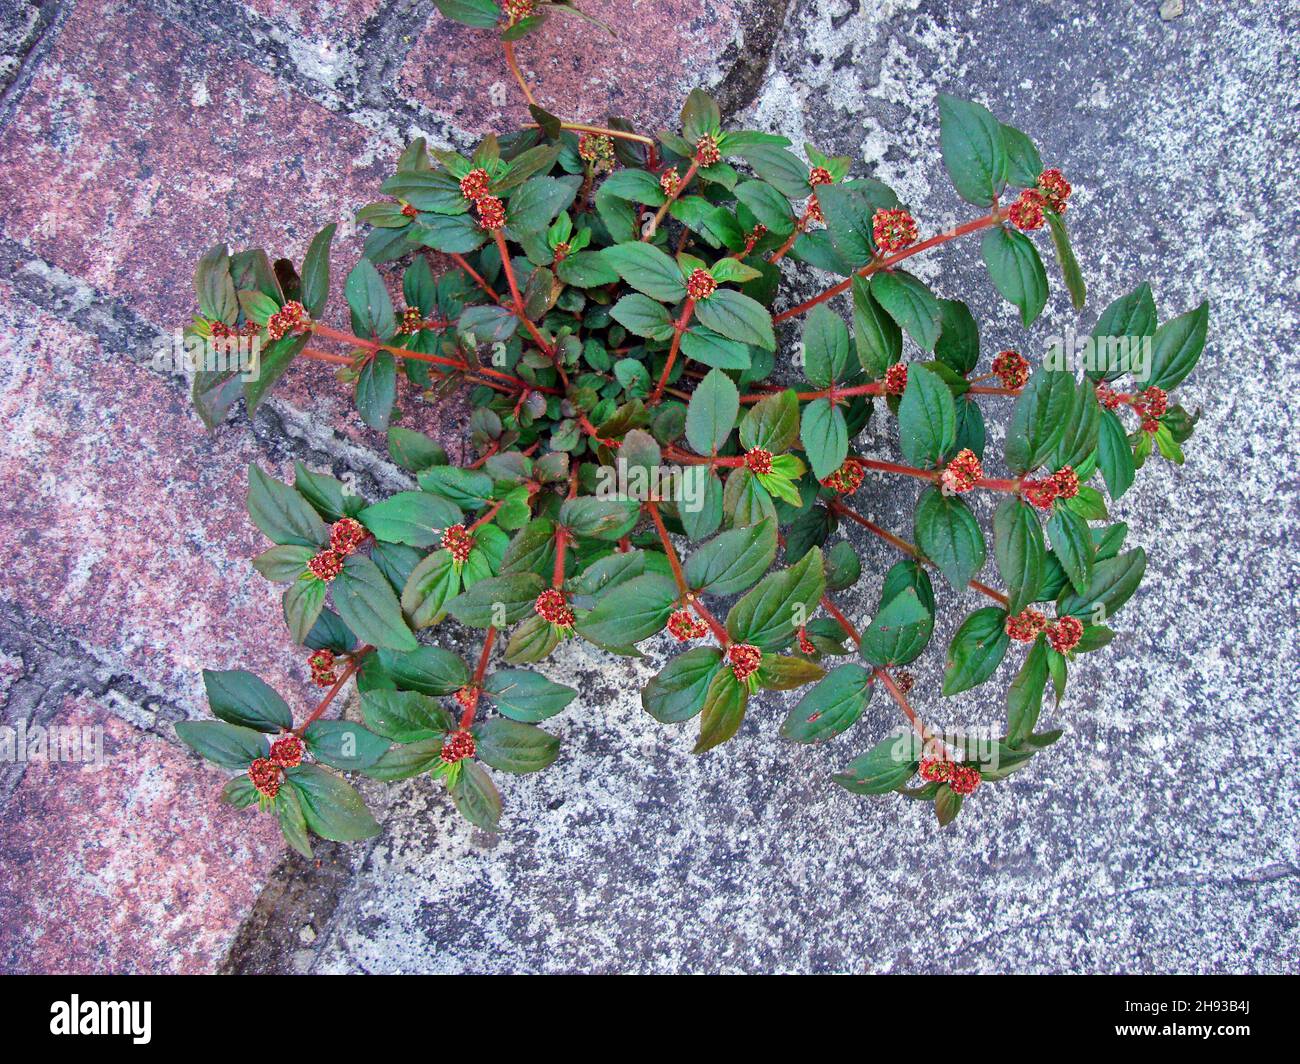 Asthma-plant (Chamaesyce hirta or Euphorbia hirta) on sidewalk Stock Photo